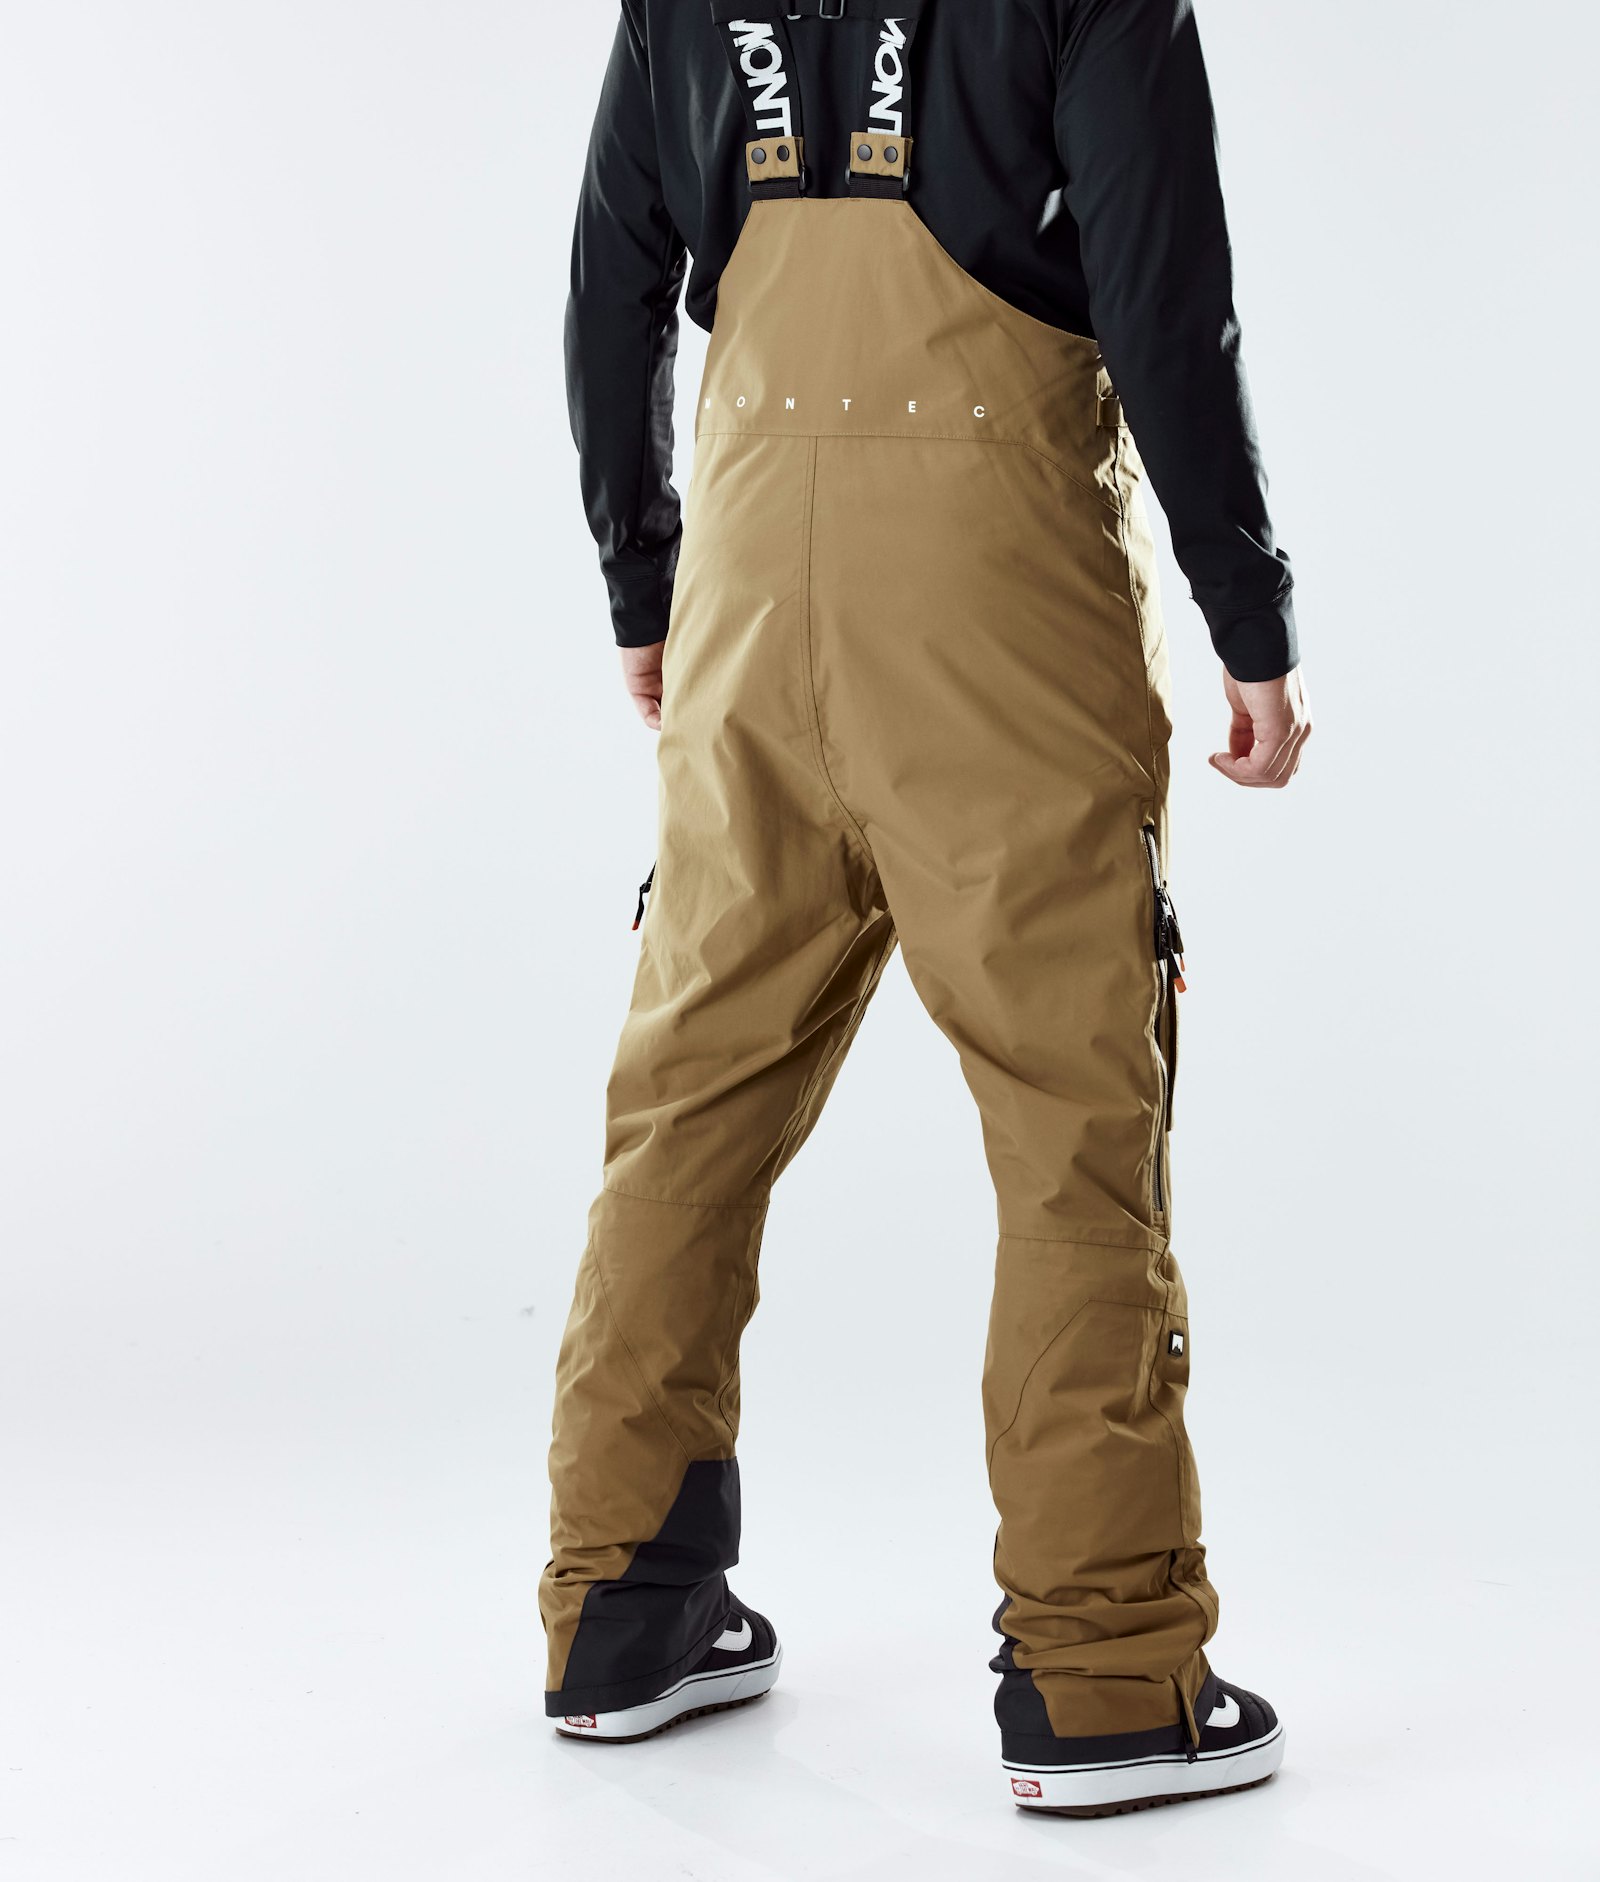 Montec Fawk 2020 Pantalones Snowboard Hombre Gold